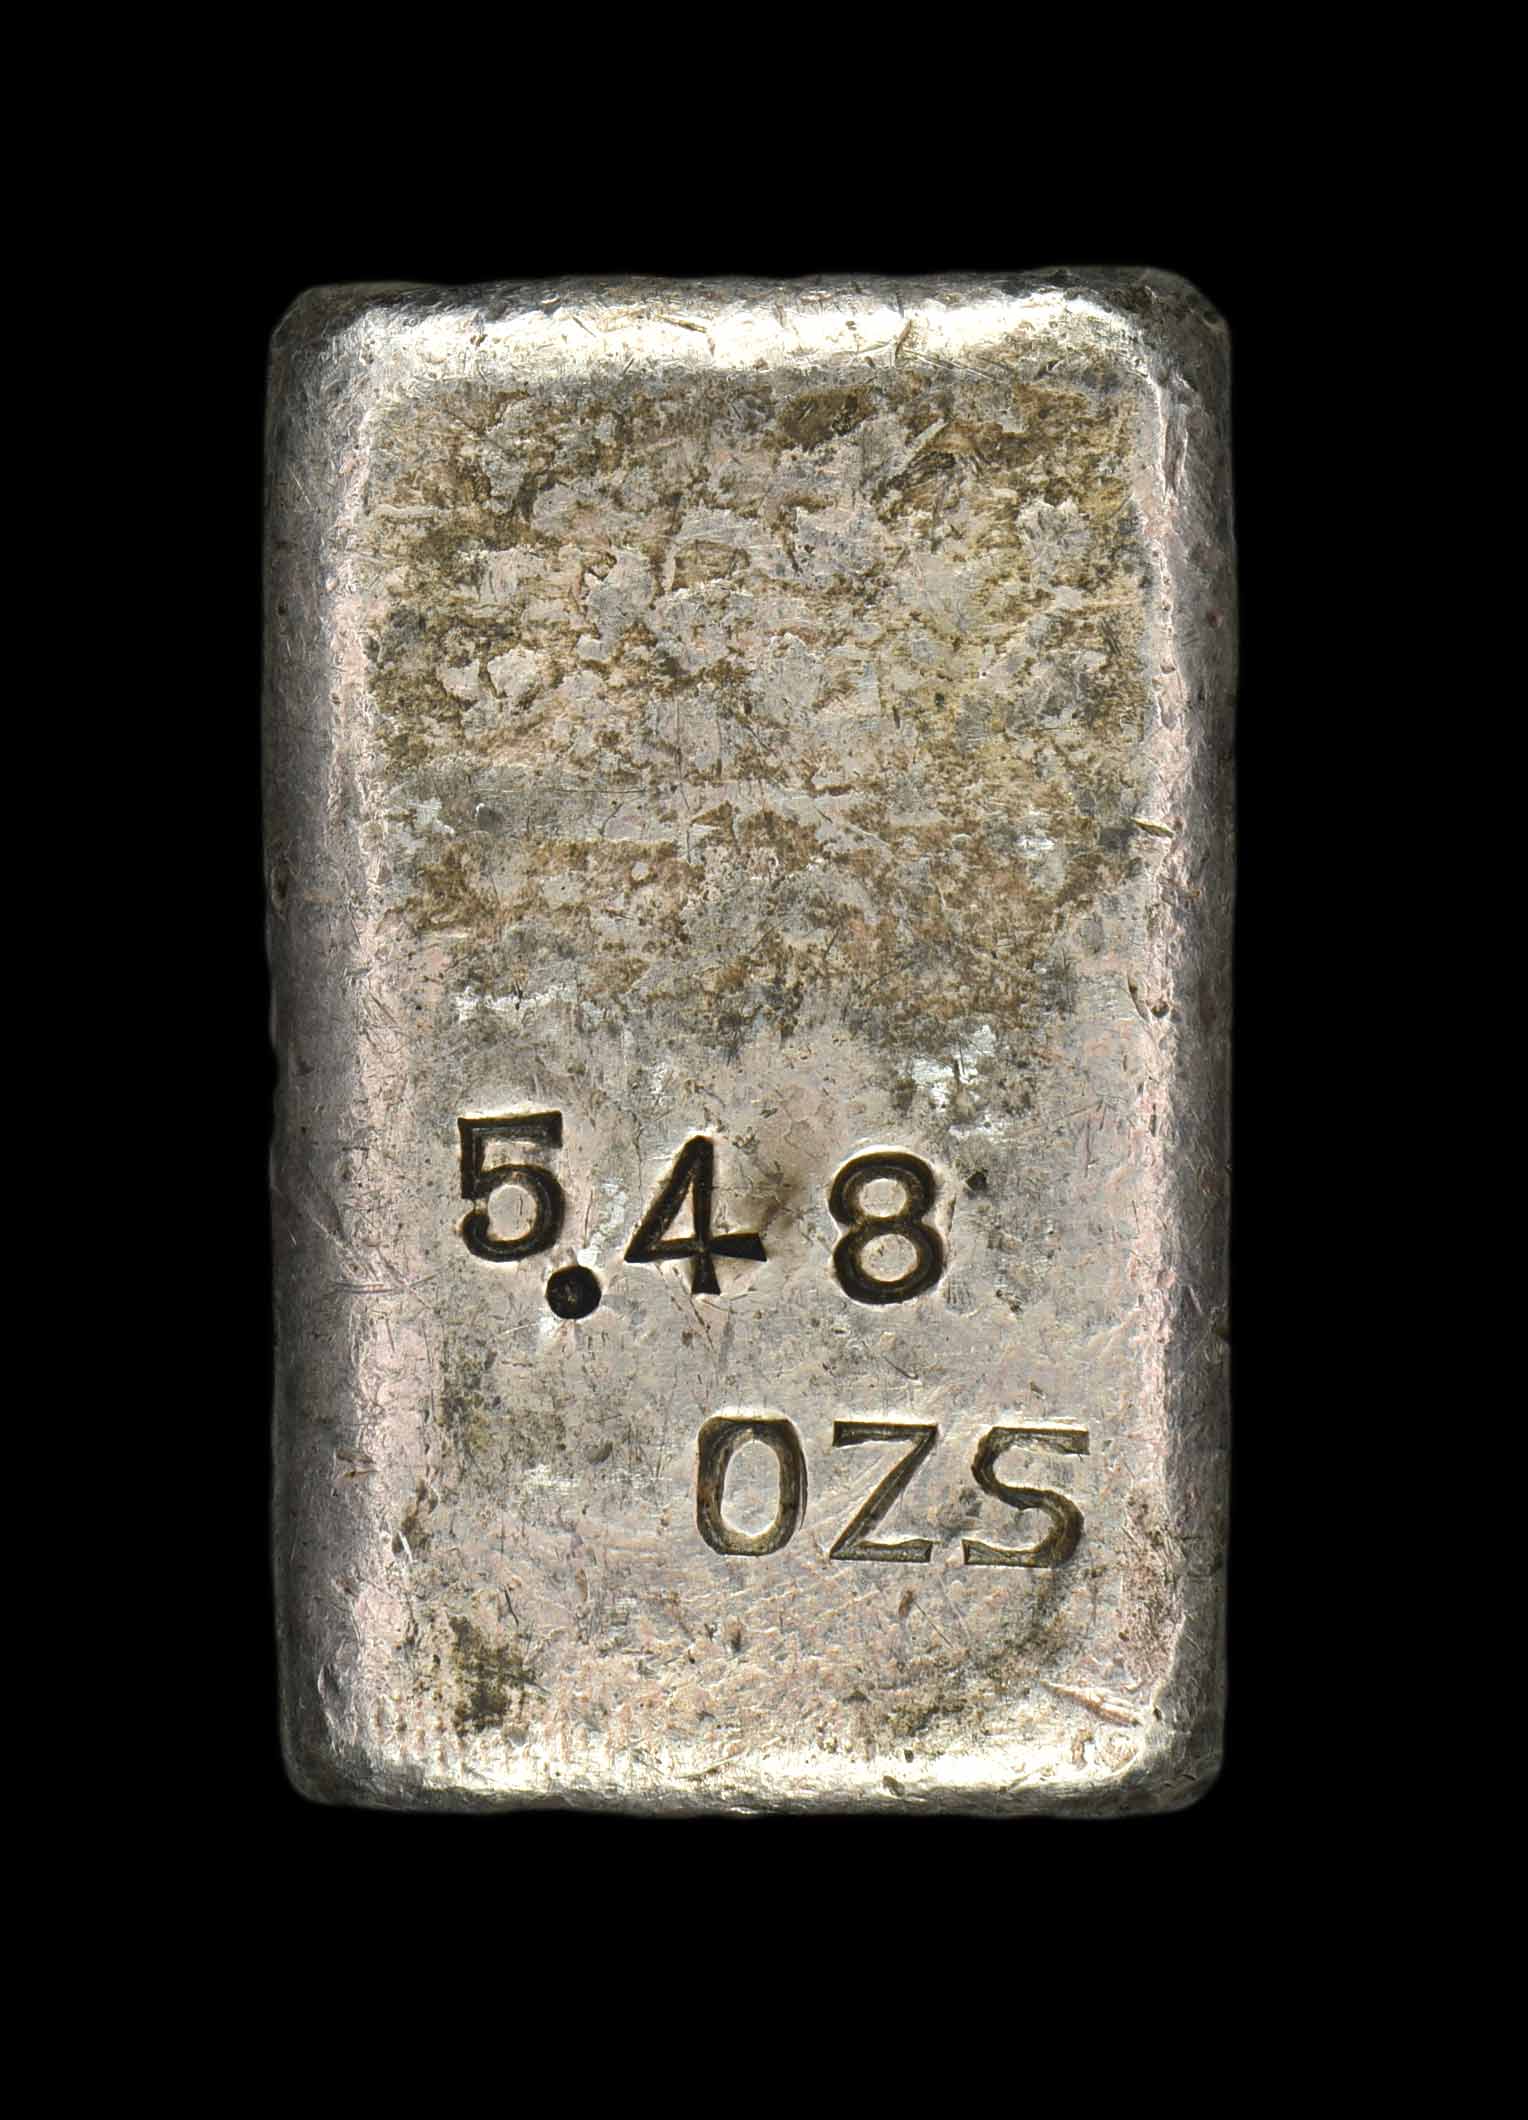 Type I, S.F., No. 277, S.S., 5.48 ozs (r)